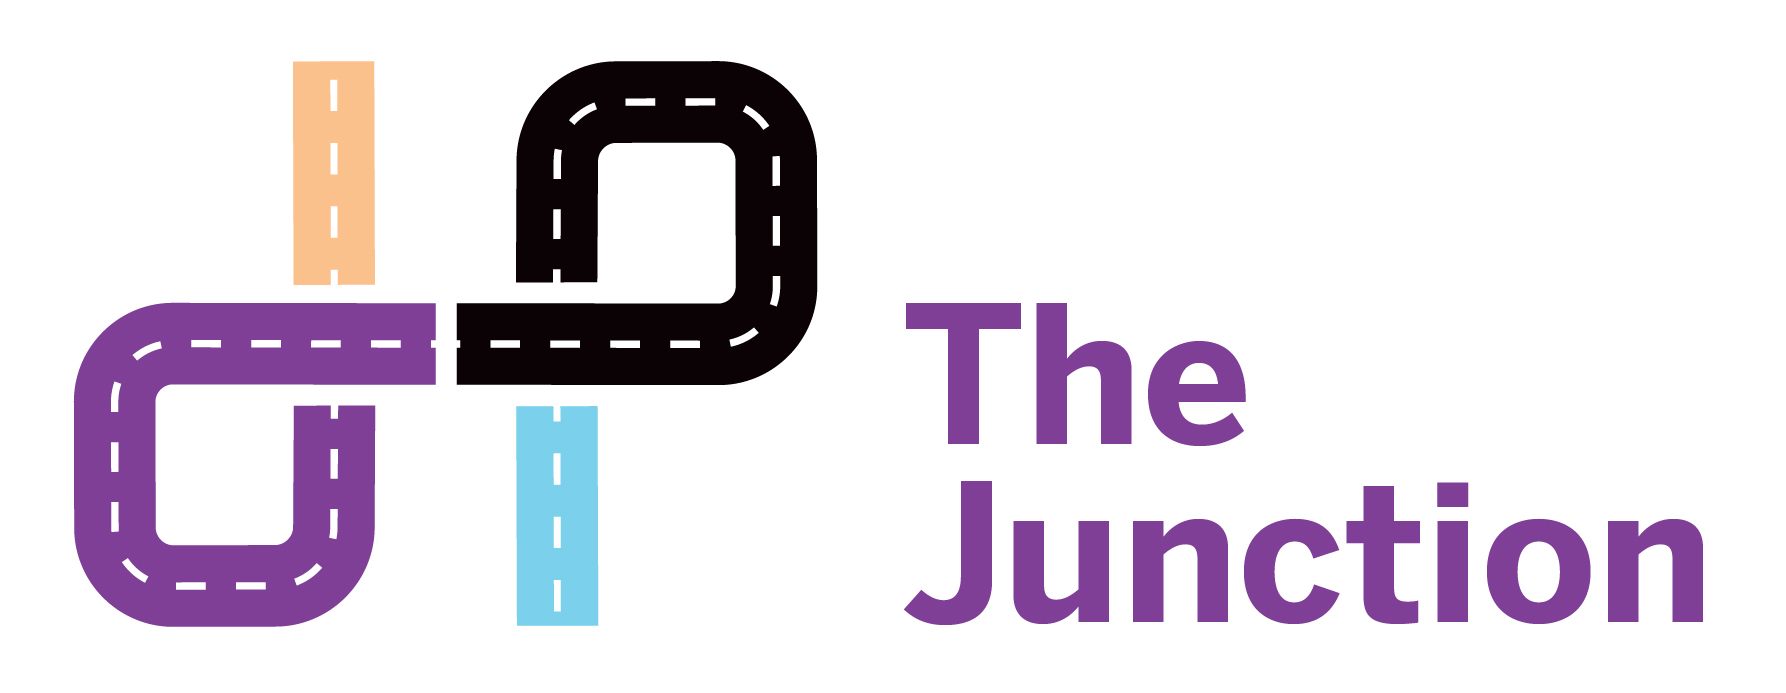 Jemca The Junction Intranet Logo